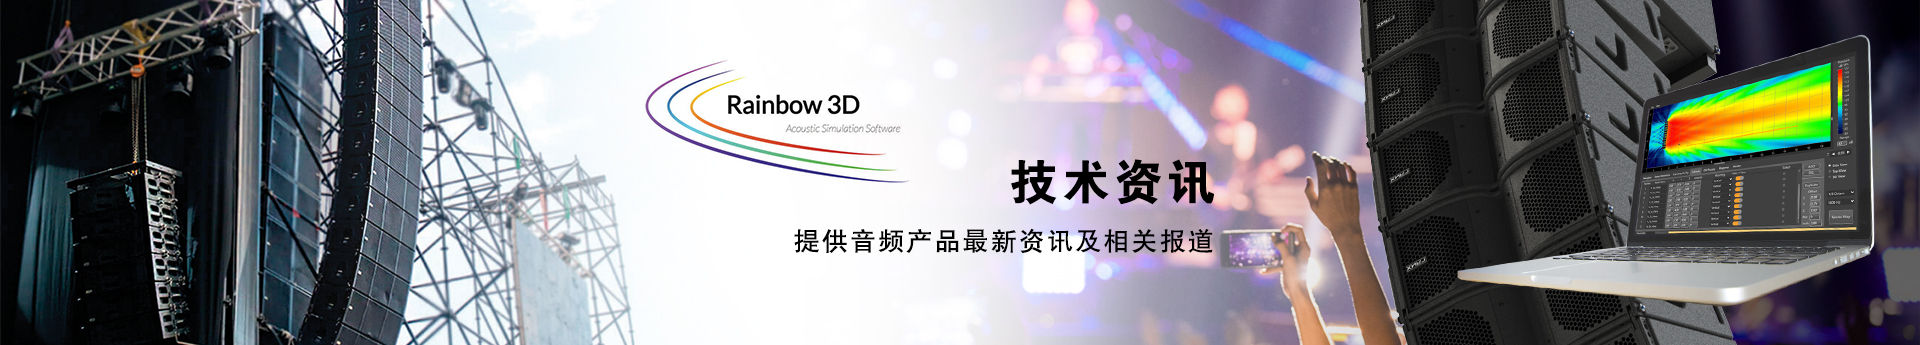 北京西雅林科提供一站式一步到位的全方位技术服务